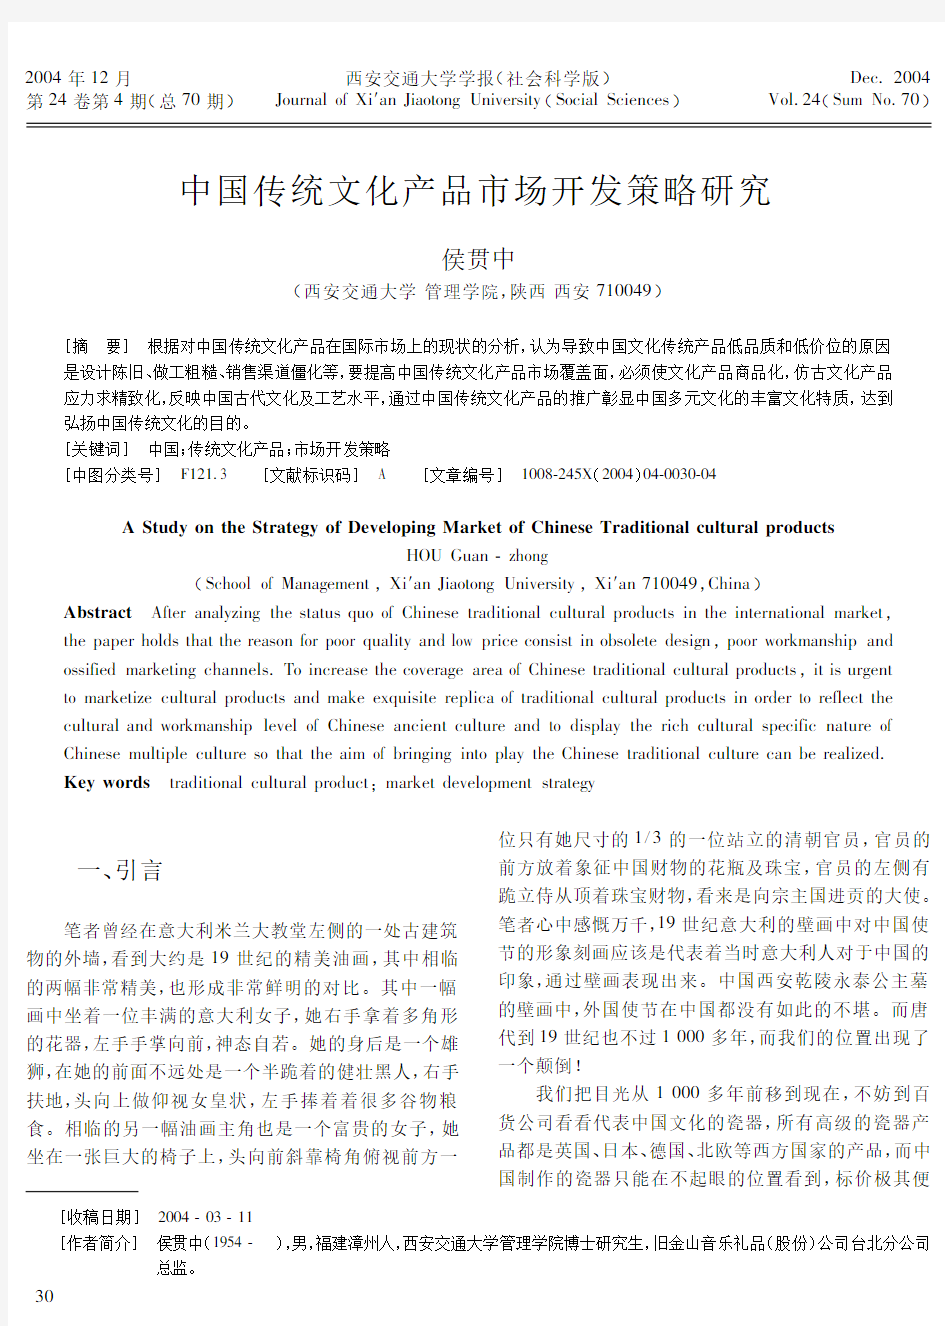 中国传统文化产品市场开发策略研究